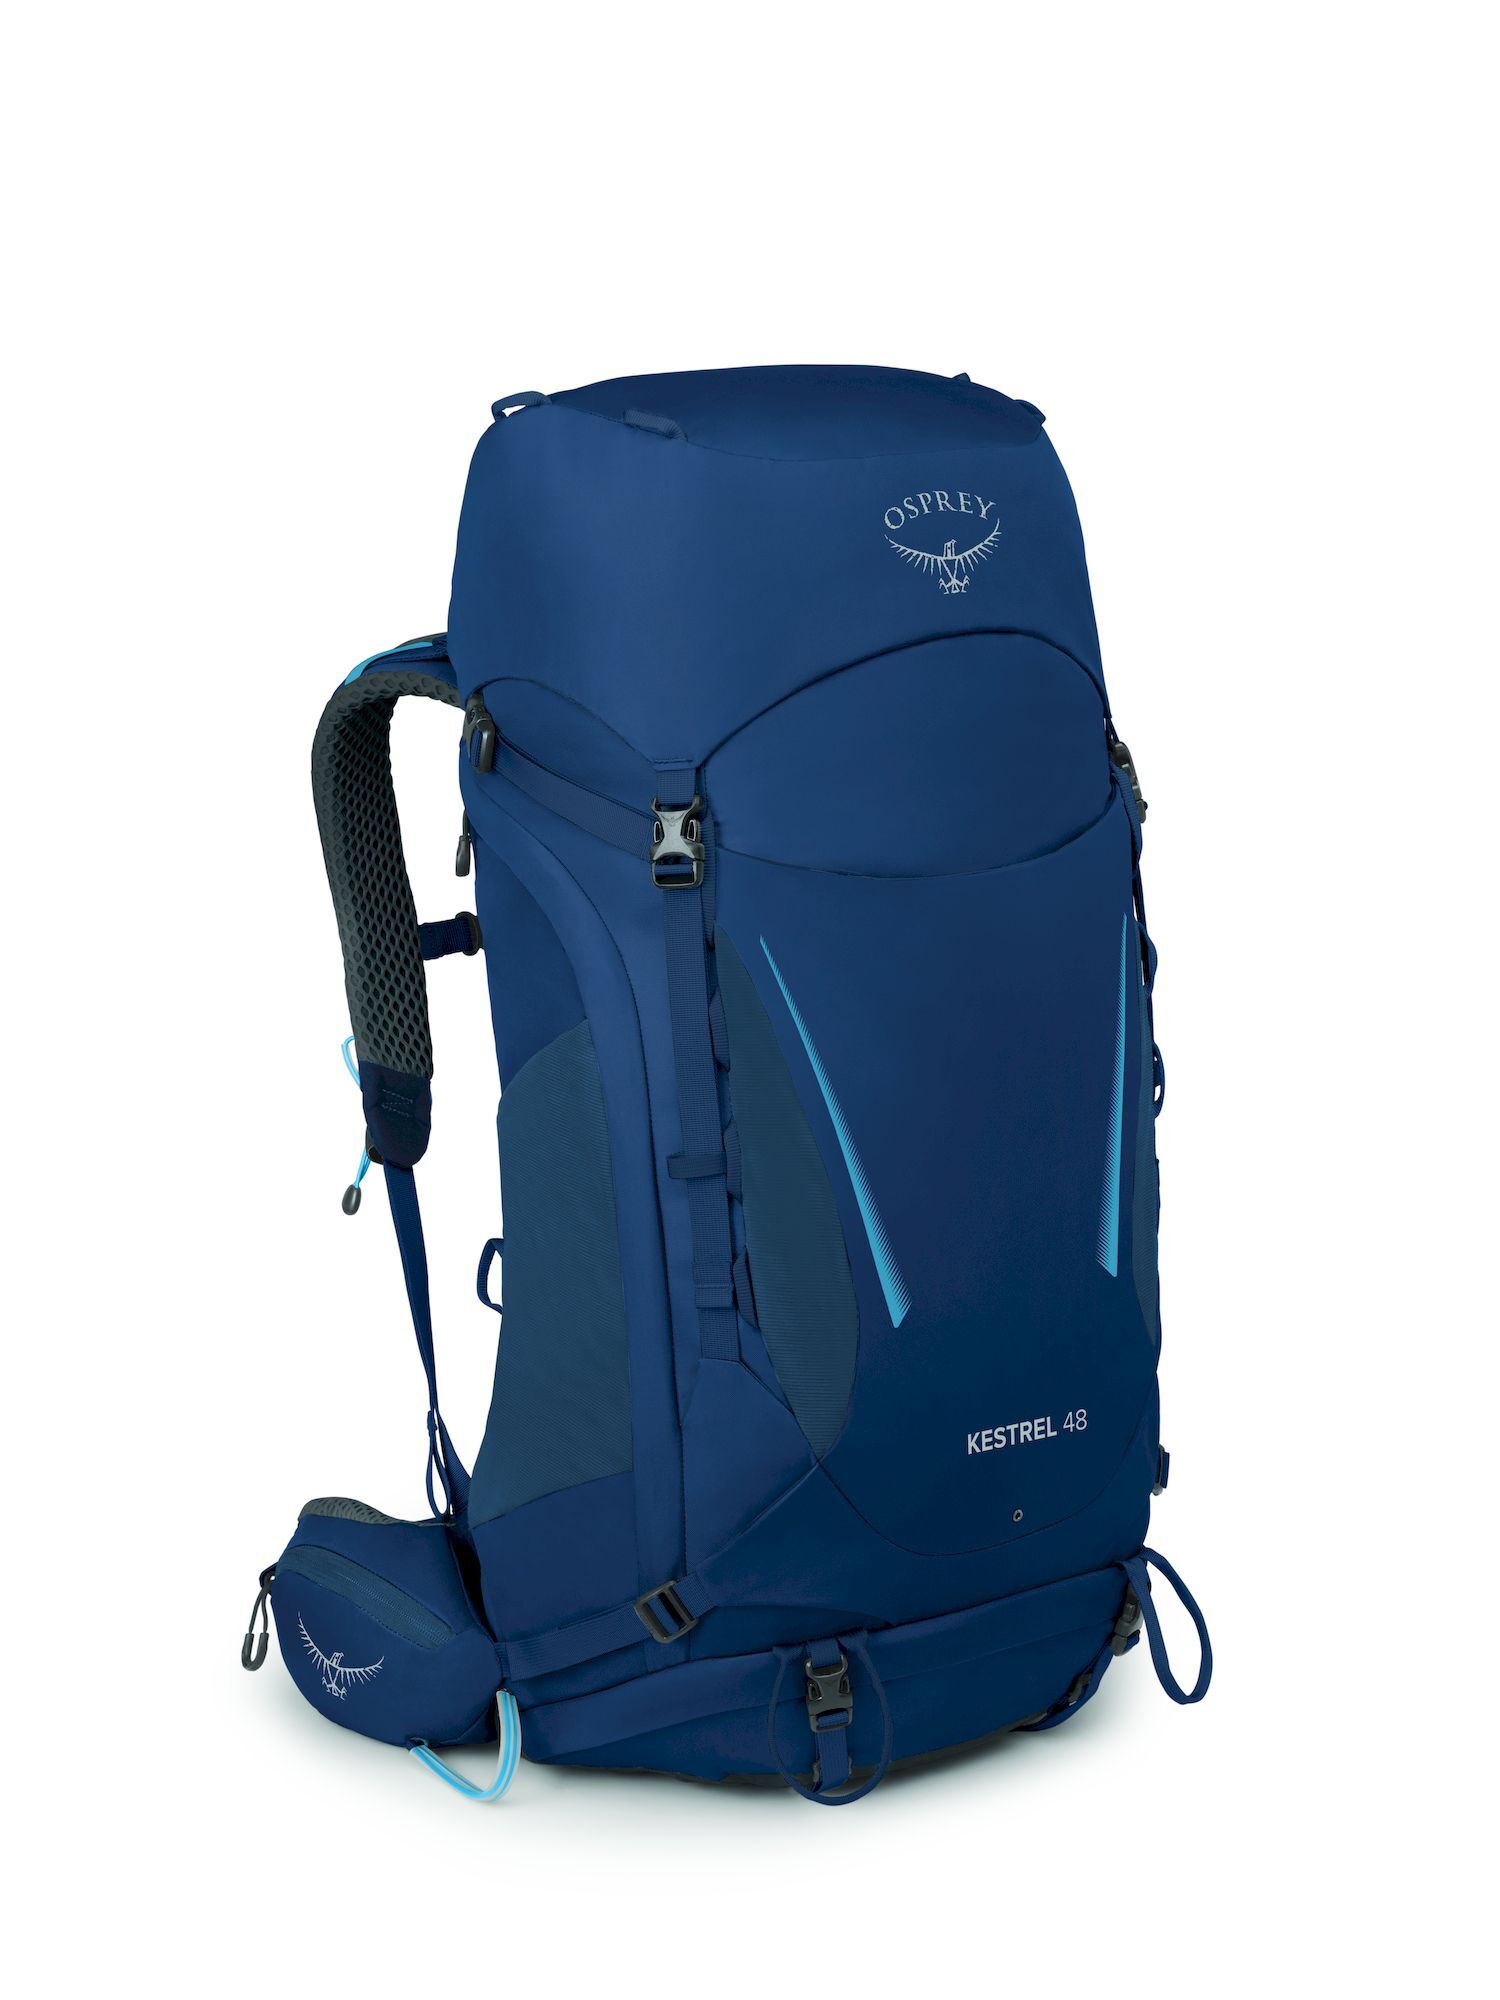 Osprey Kestrel 48 - Hiking backpack - Men's